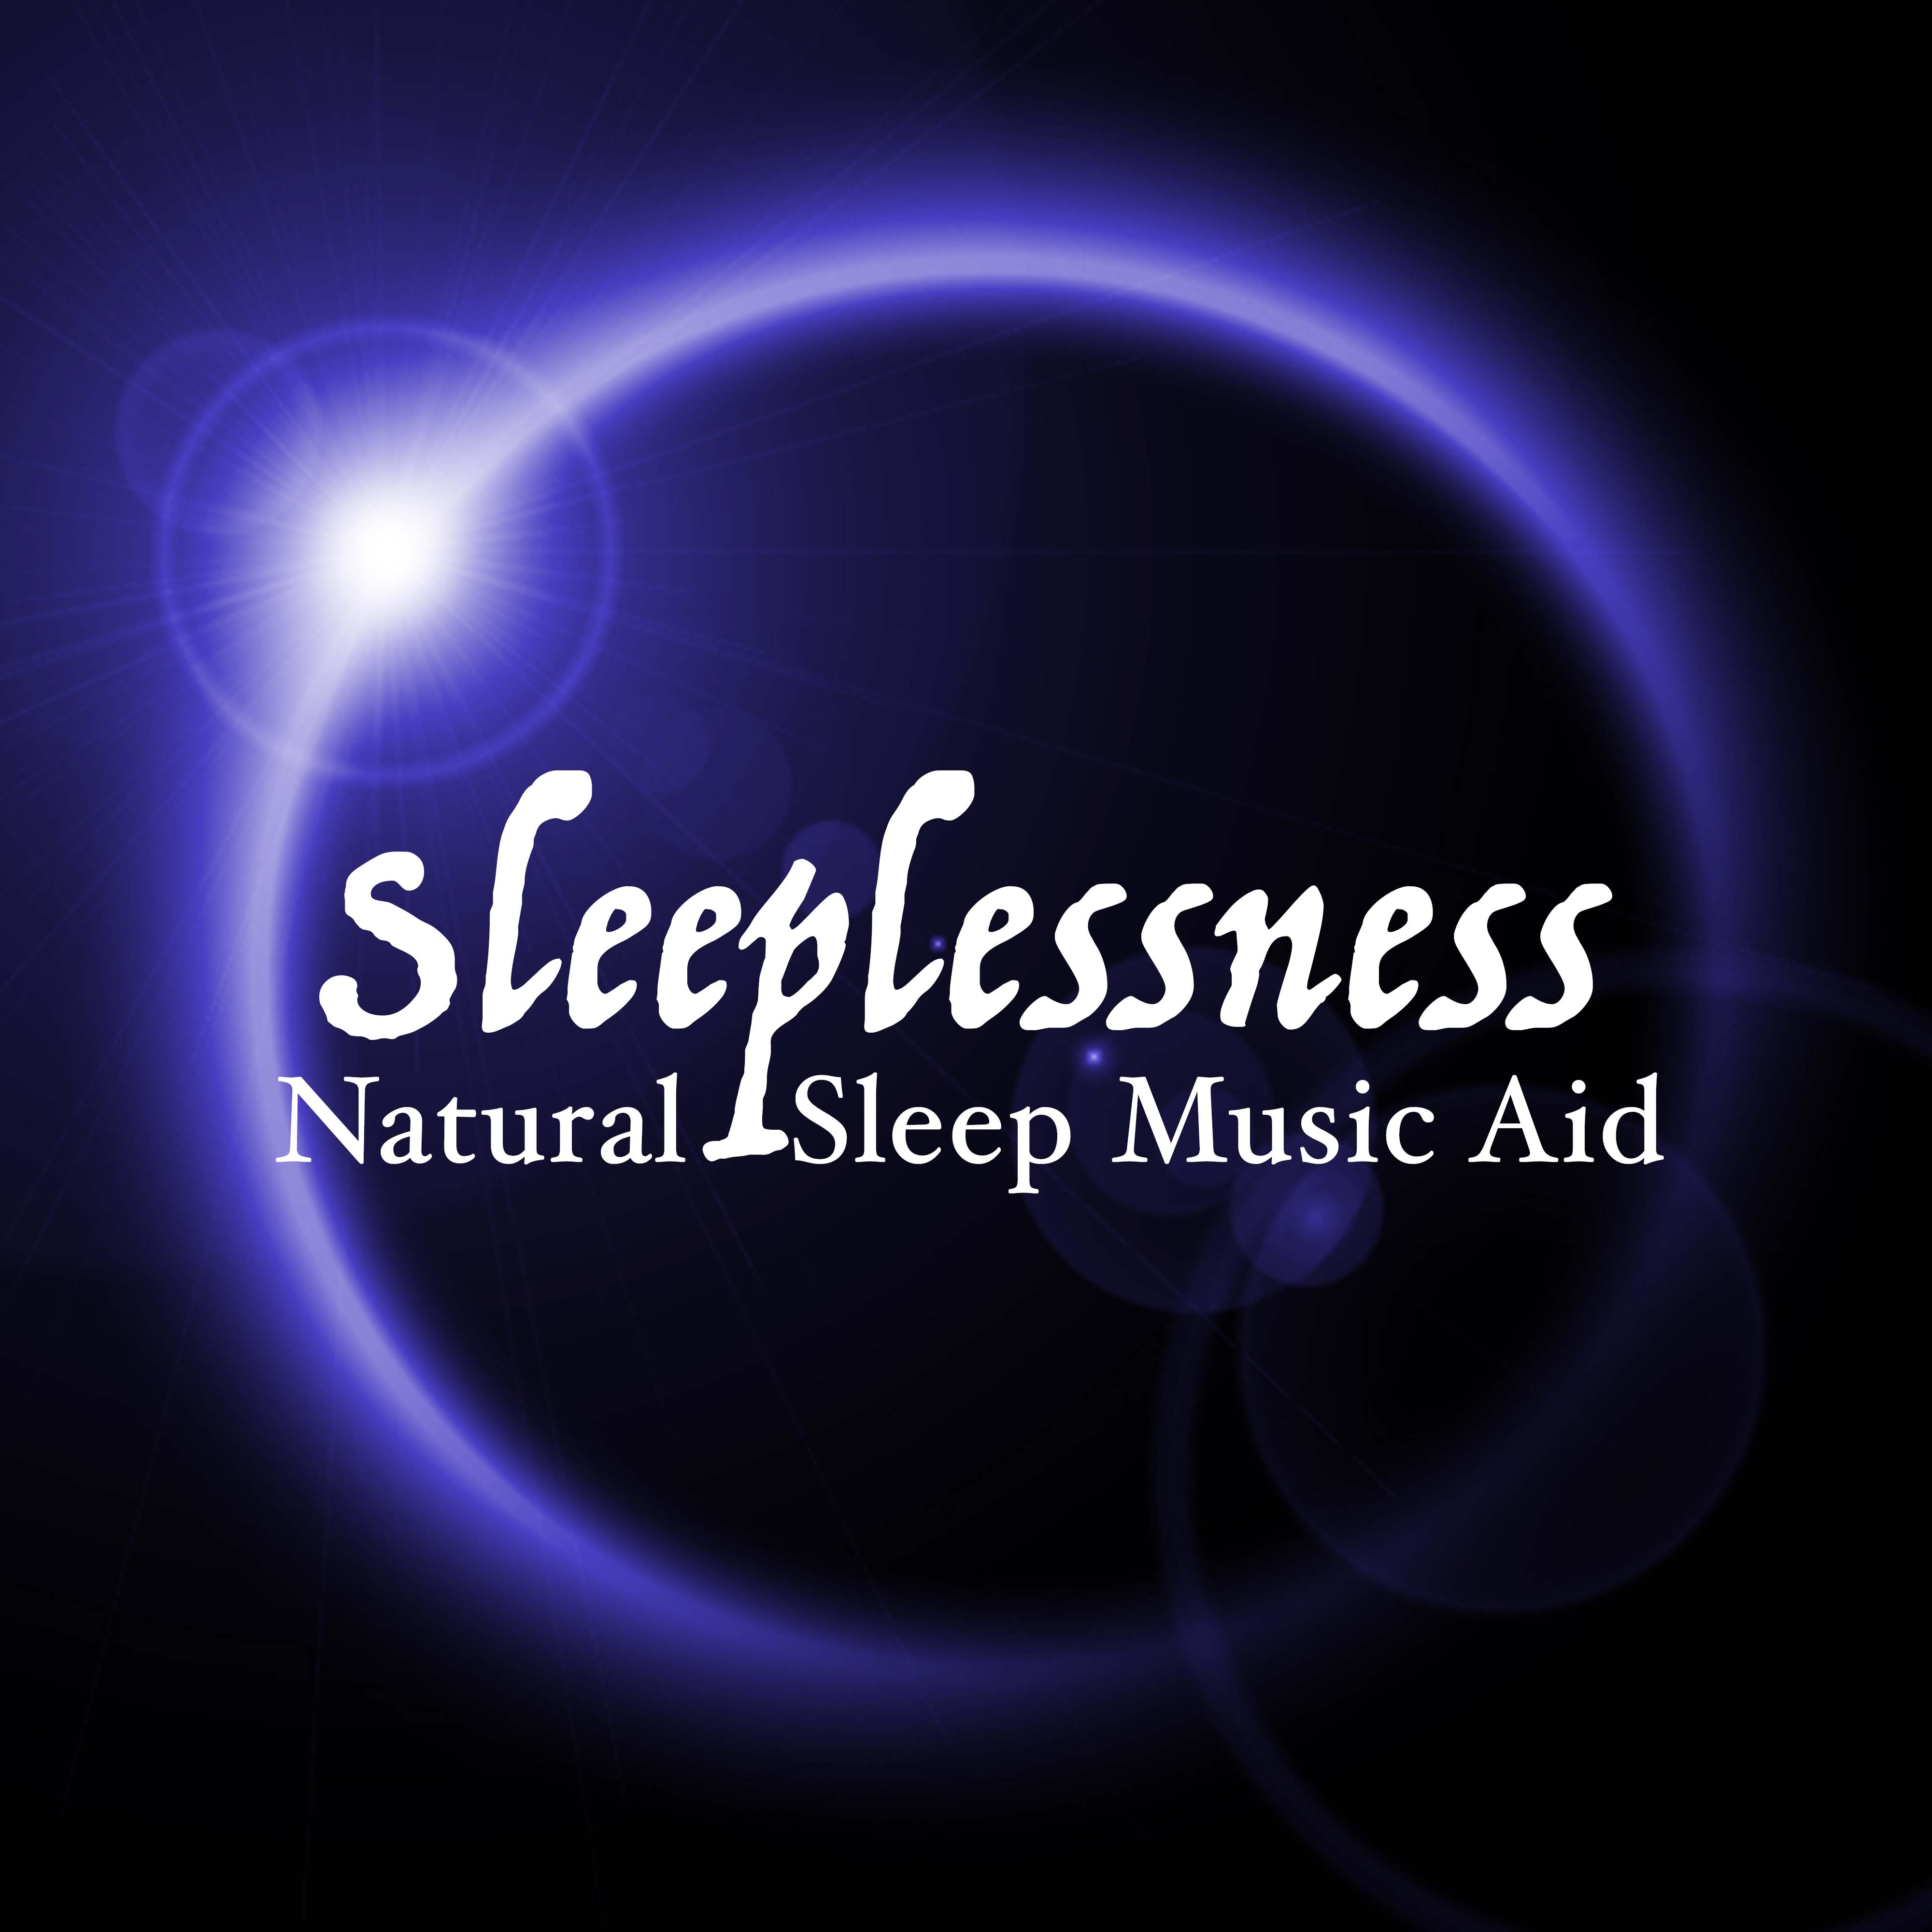 Sleeplessness - Natural Sleep Music Aid